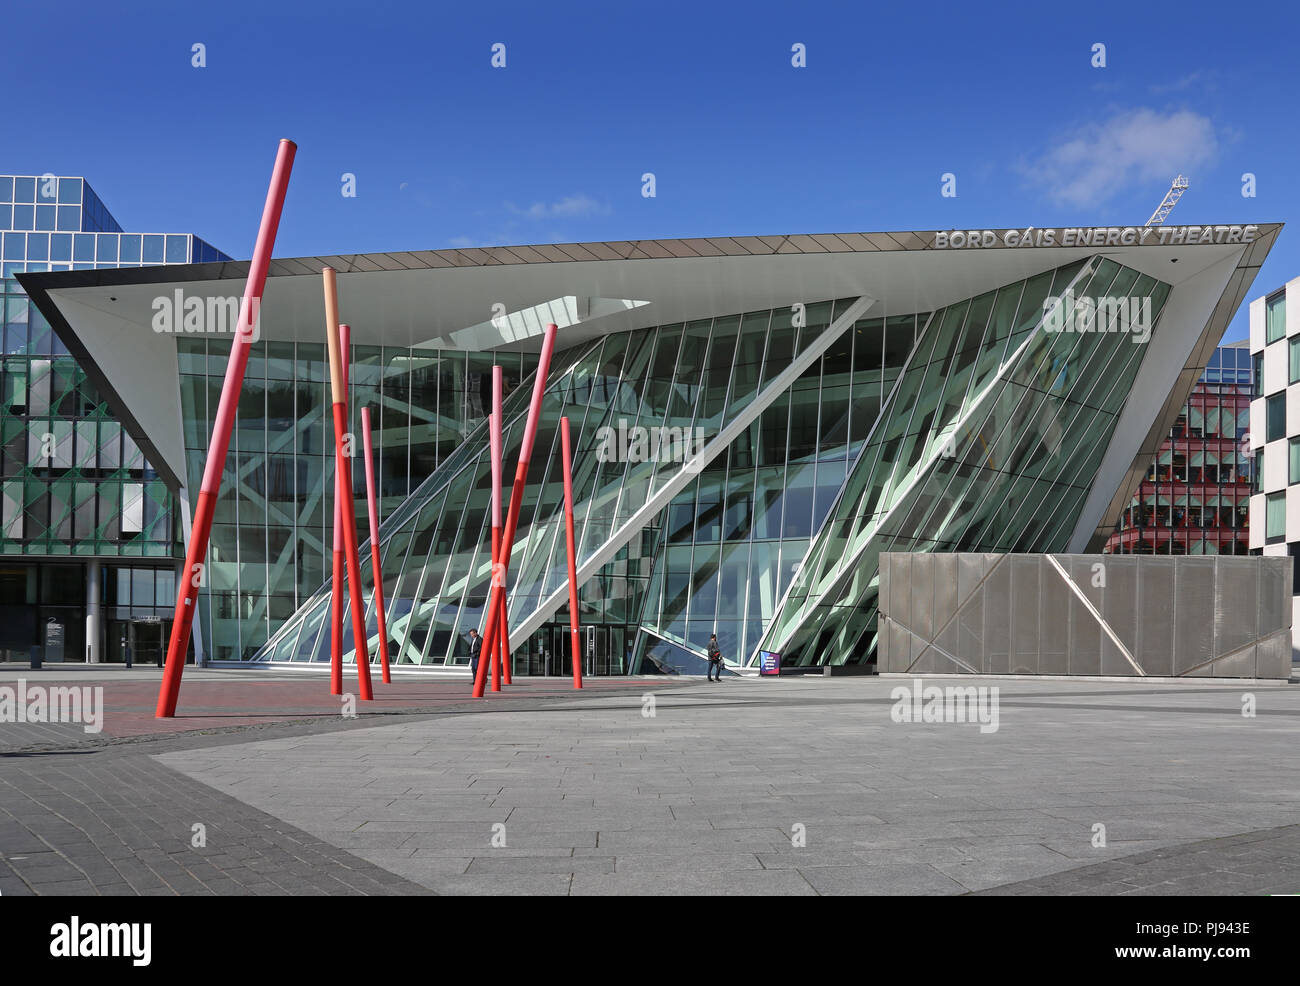 Frontansicht des Bord Gais Energy Theatre, Dublin, entworfen vom Architekten Daniel Libeskind. Stockfoto